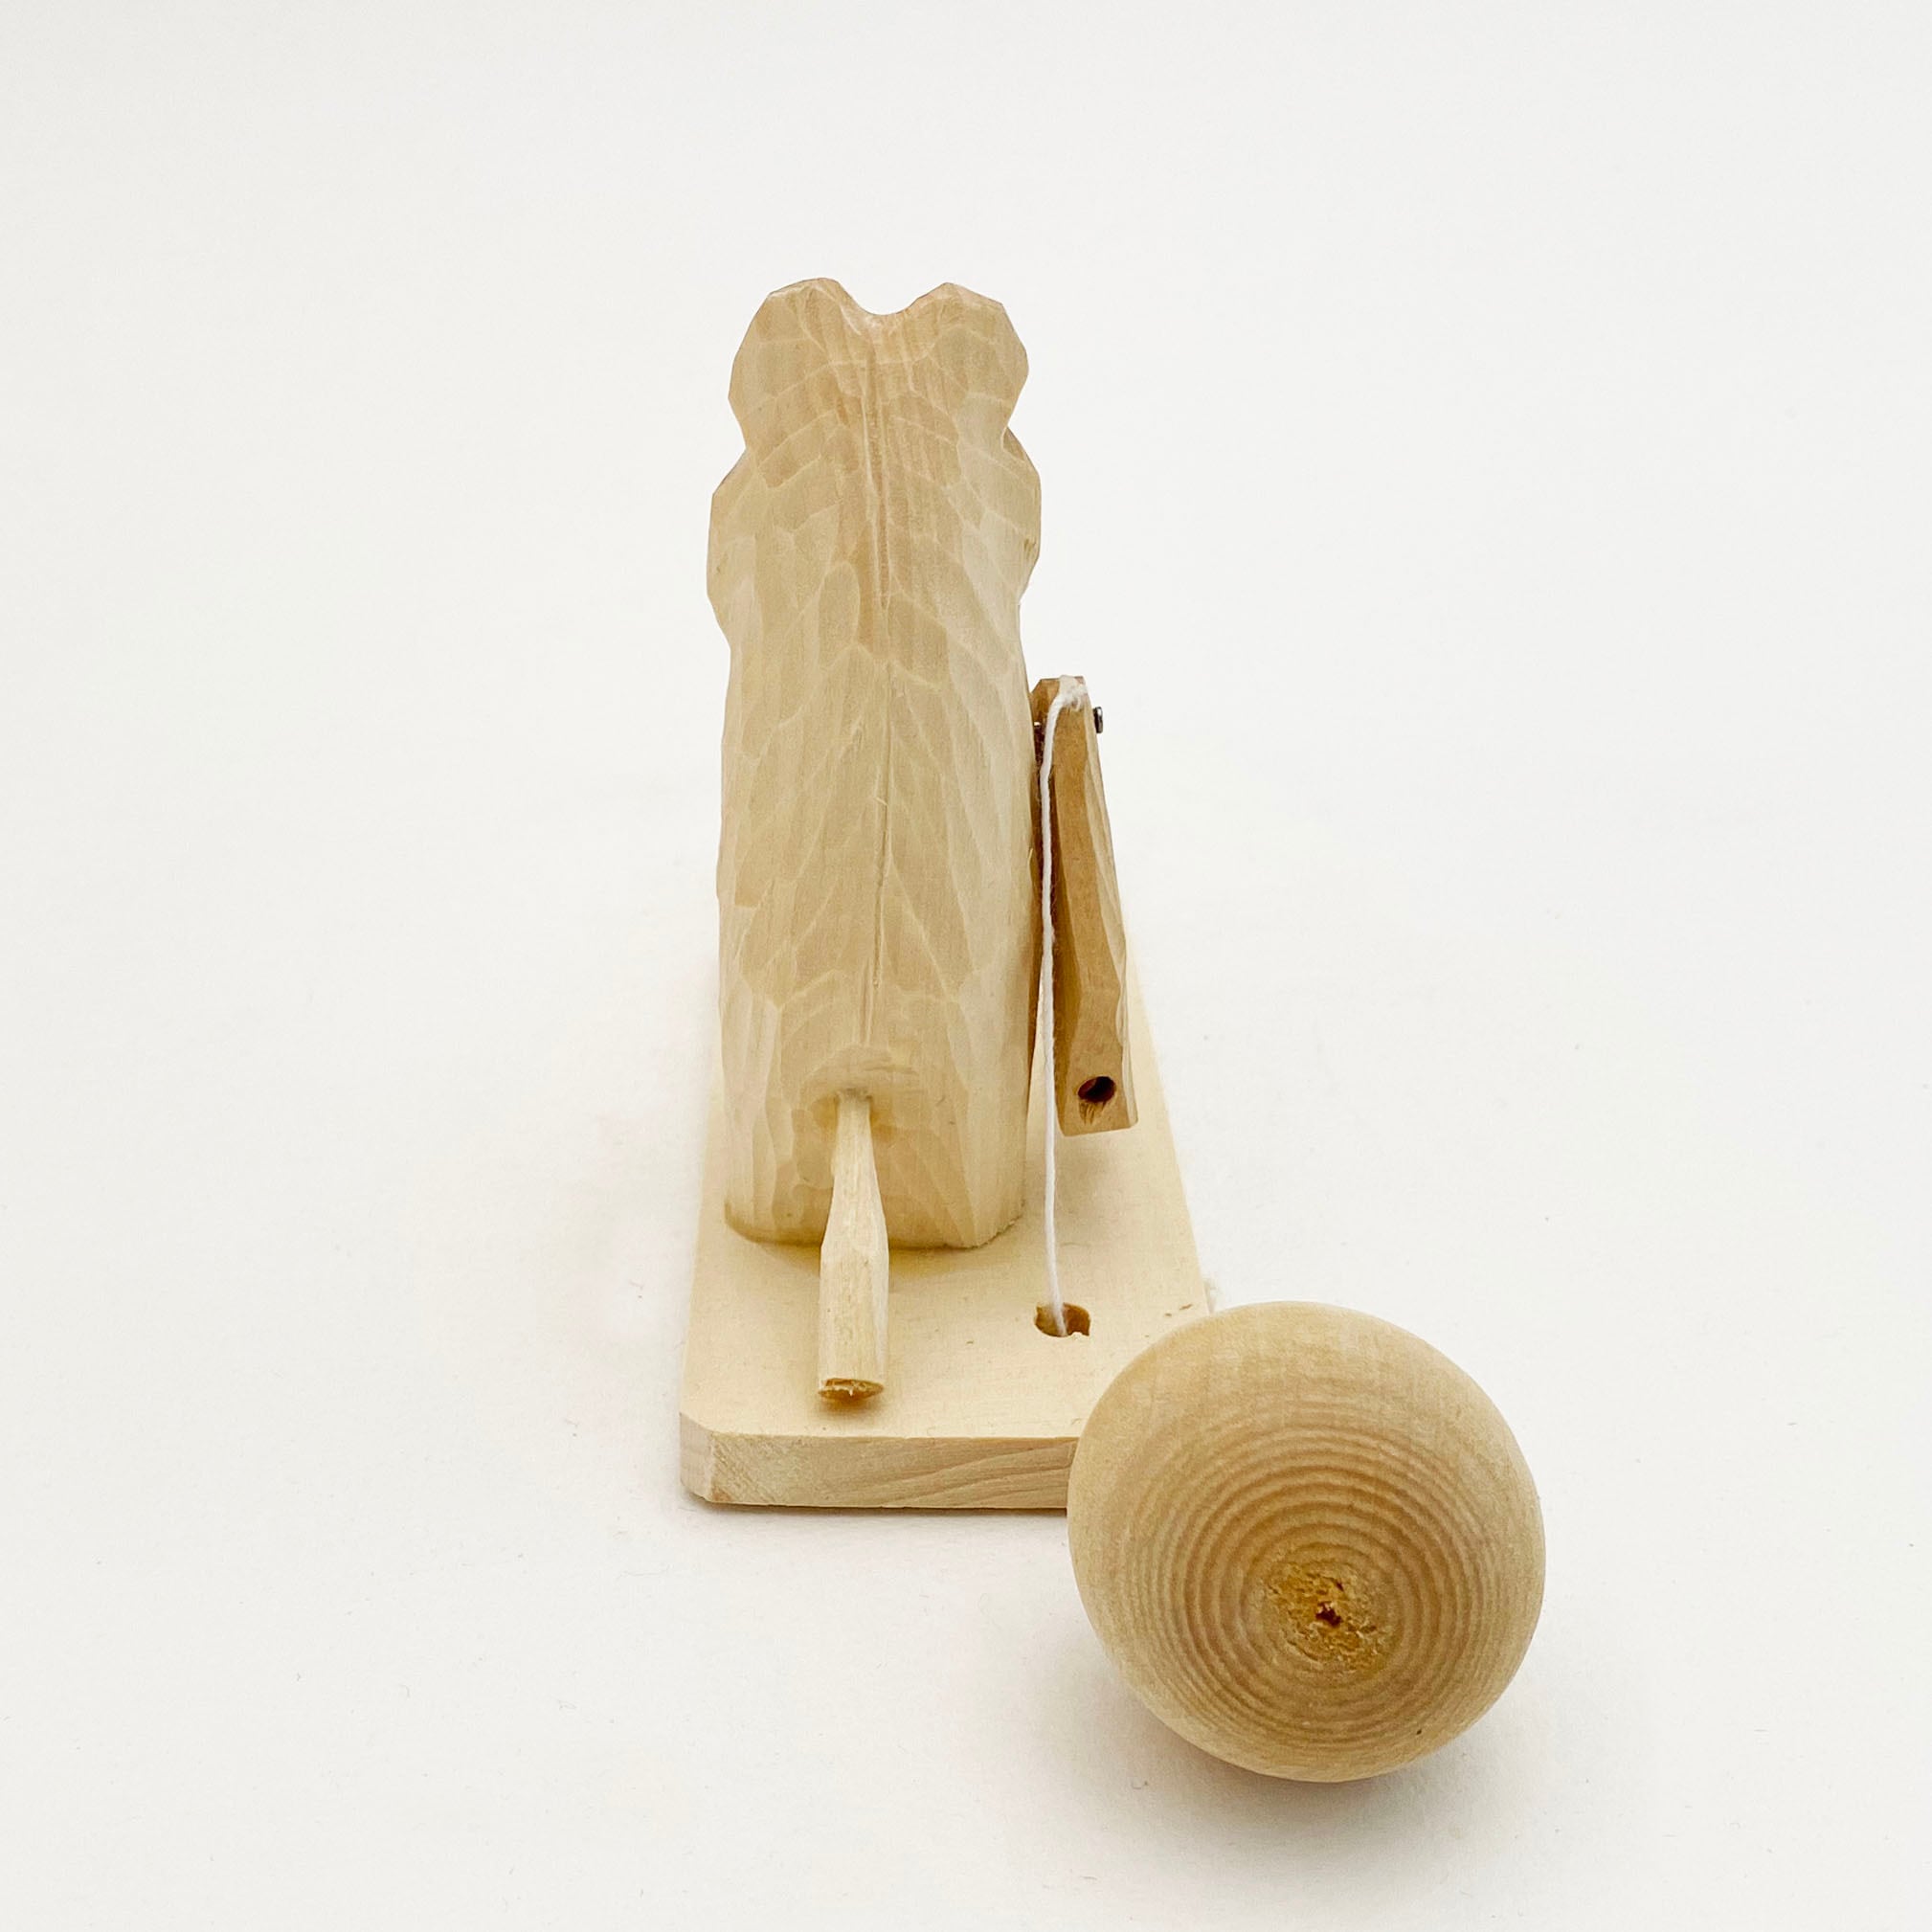 ボゴロツコエ木地玩具「クマのお馬遊び」